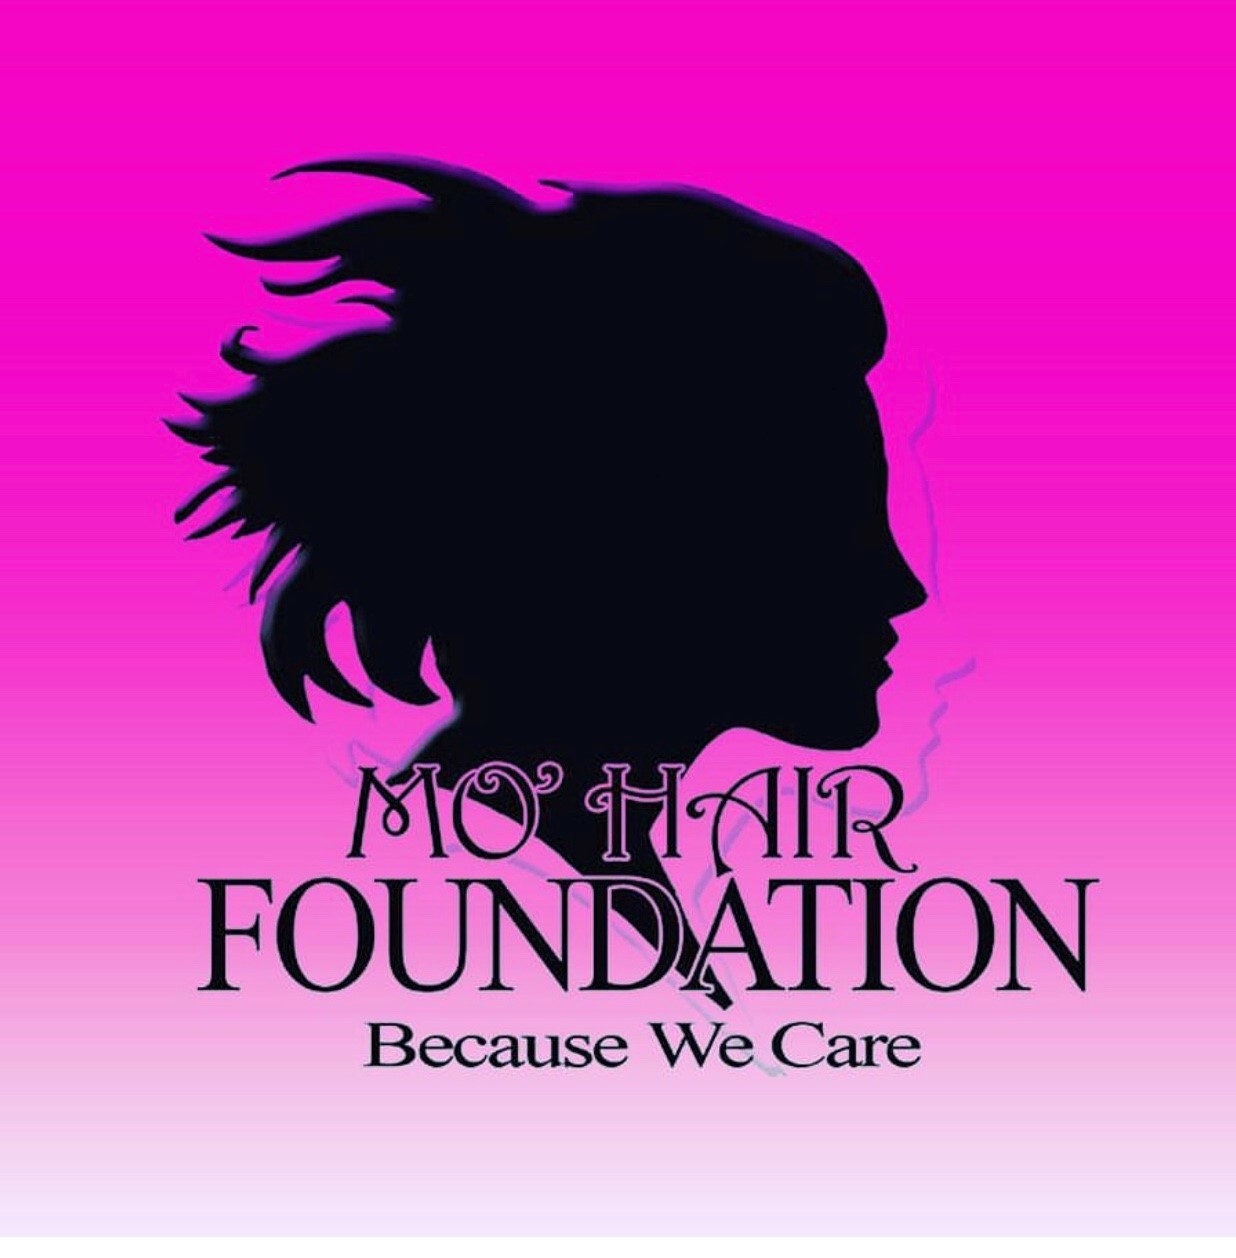 Mo'Hair Foundation, Inc.